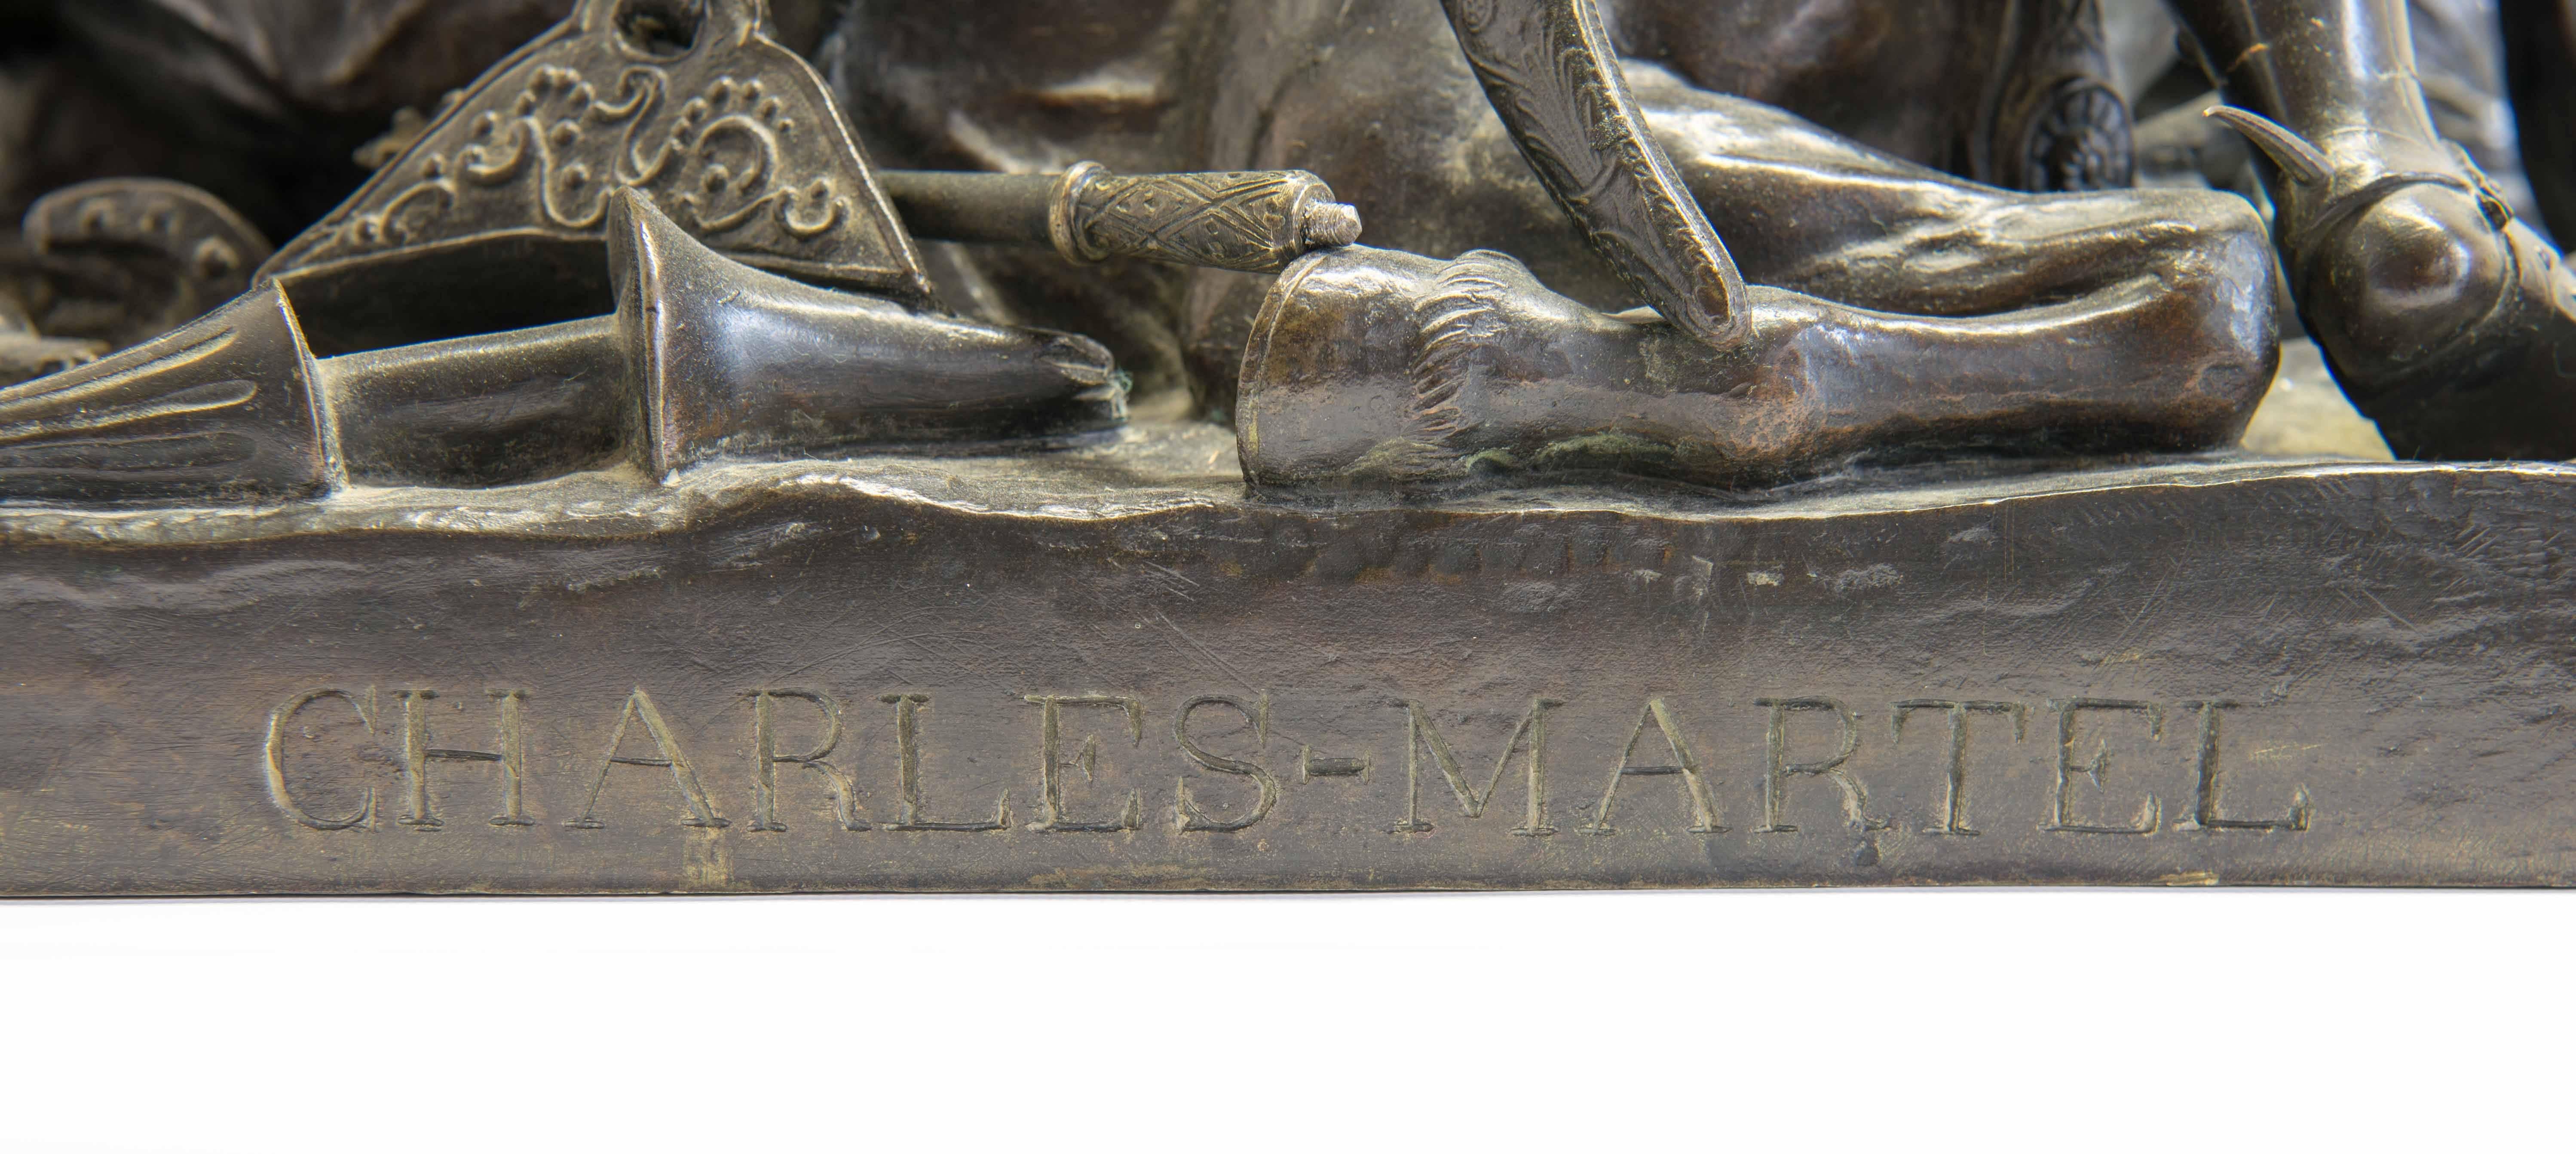 Charles Martel & Abderame, Bronze Statue by Theodore Gechter For Sale 2